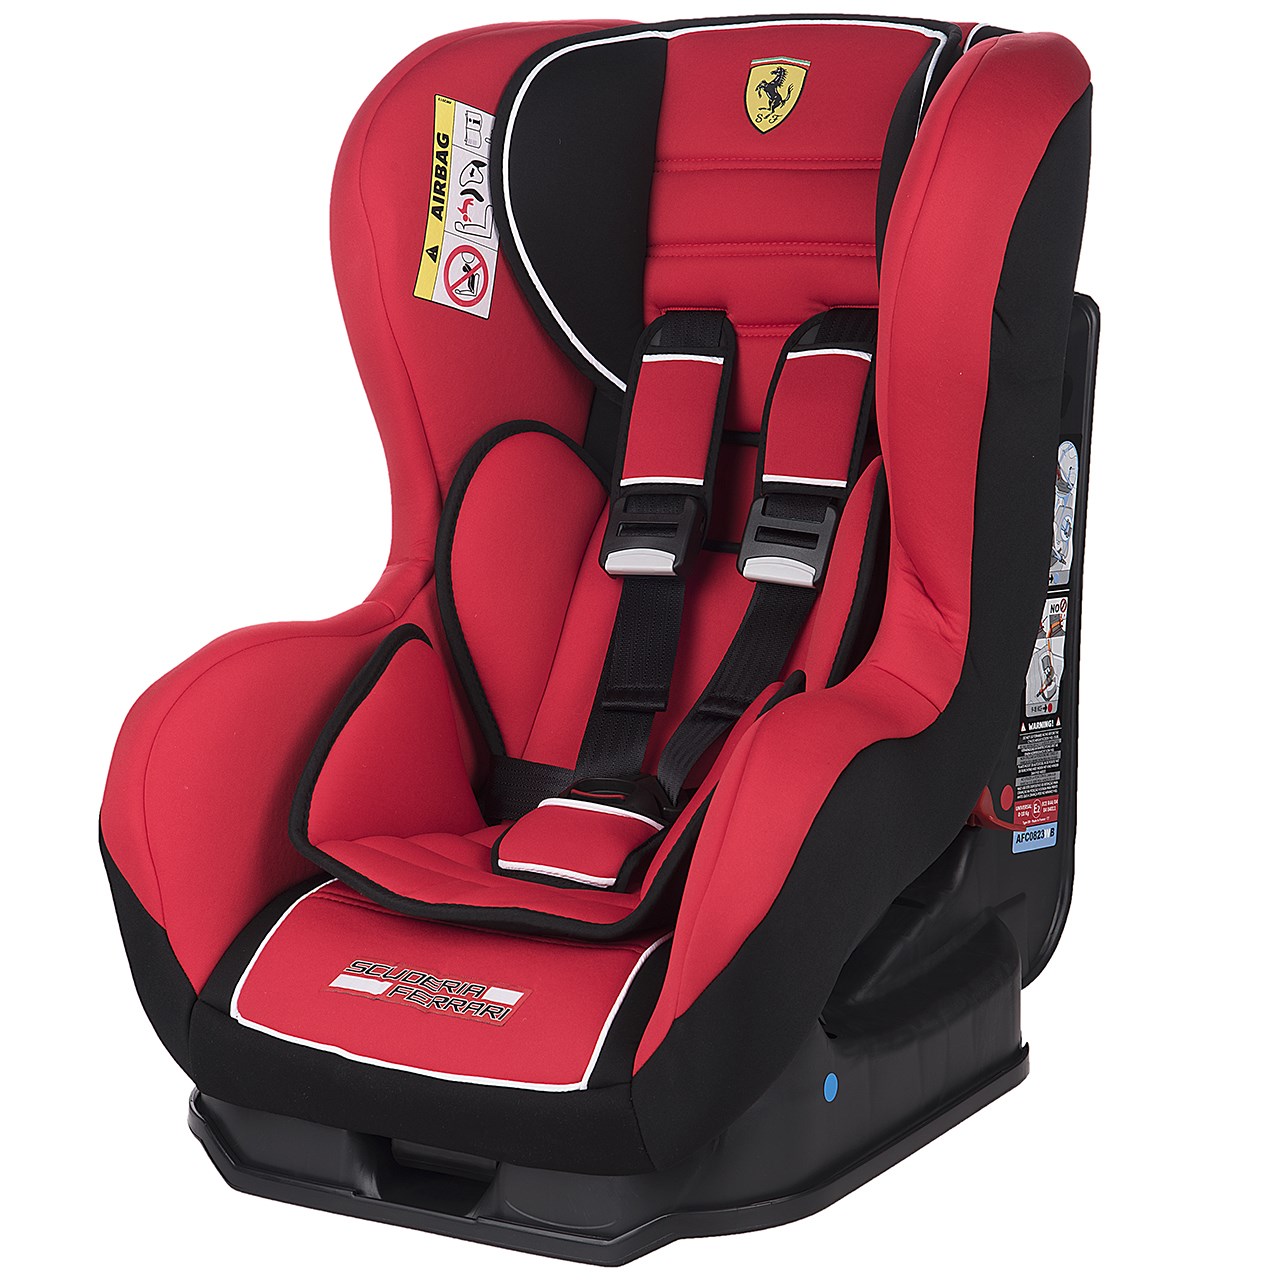 صندلی خودرو کودک نانیا مدل Ferrari